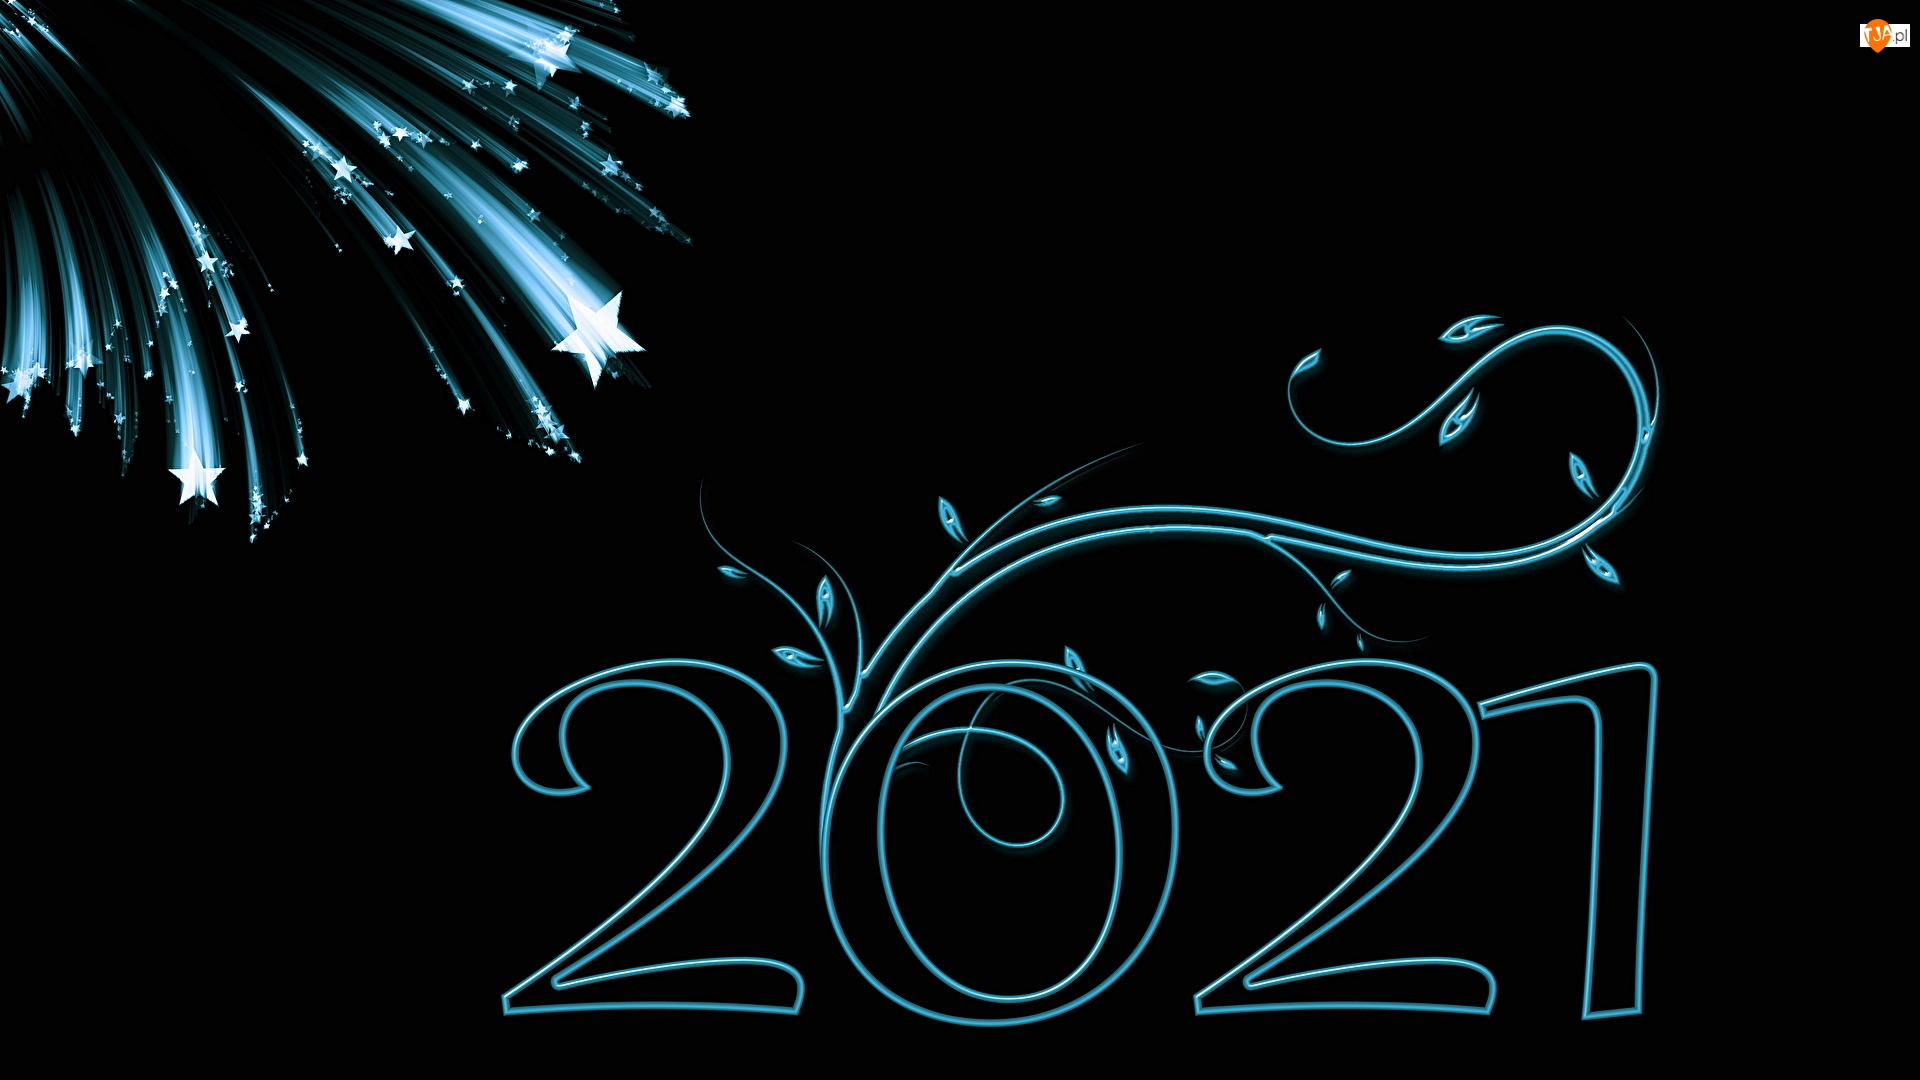 2021, Nowy Rok, Fajerwerki, Grafika 2D, Cyfry, Niebiesko-czarna